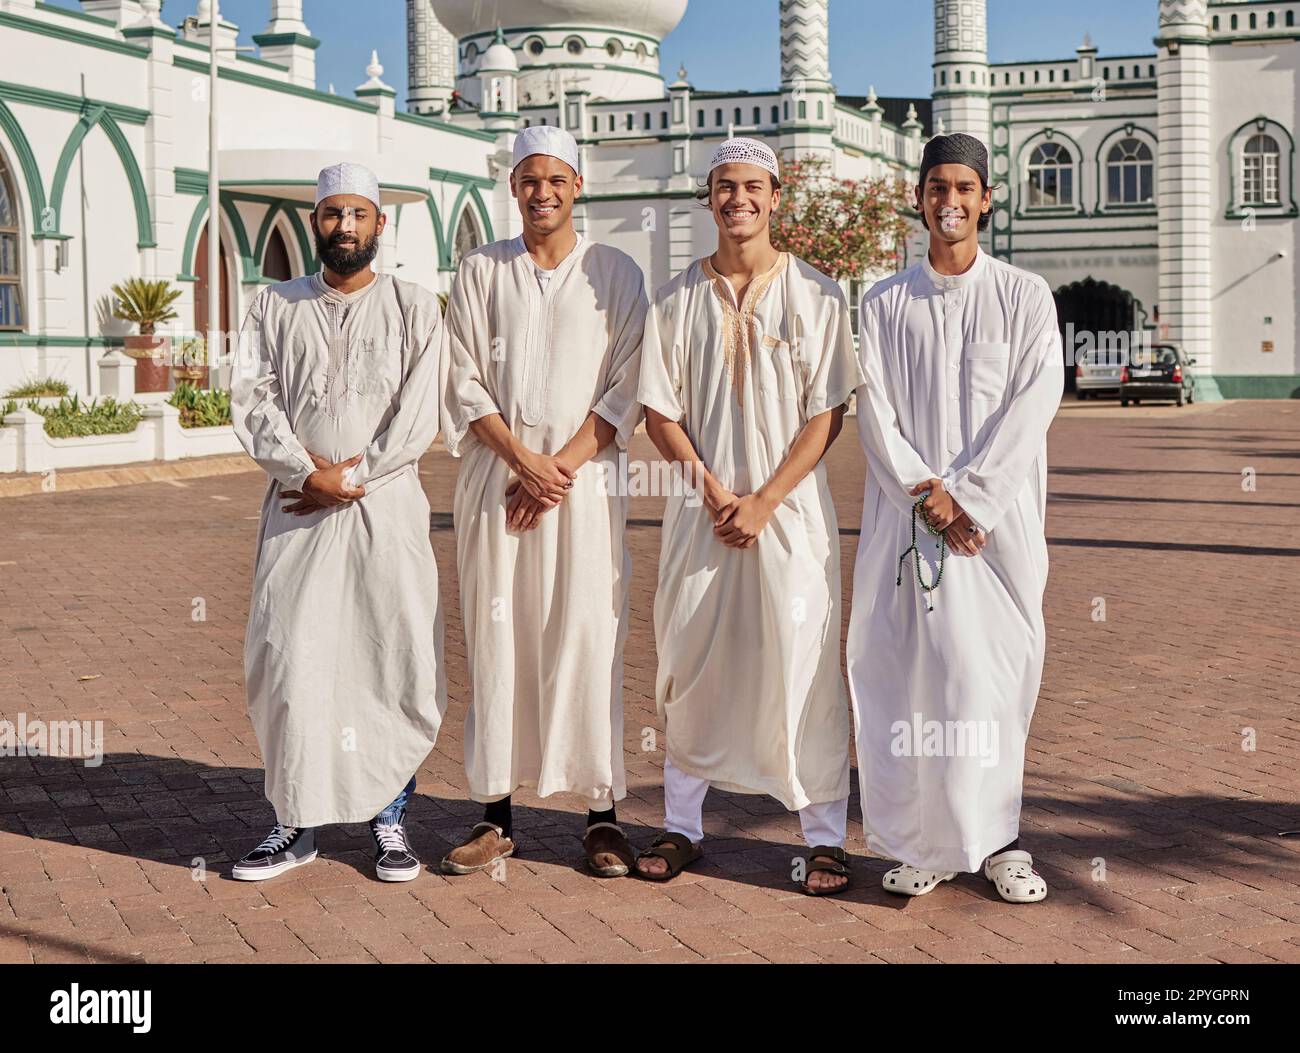 Glückliche, hajj und muslimische Männer in einer Moschee, um zu beten, ramadan Glaube und Gruppe in Mekka zusammen. Lächeln, Religion und Porträt islamischer Freunde auf einer Pilgerfahrt in die heilige Stadt für eine spirituelle Reise Stockfoto